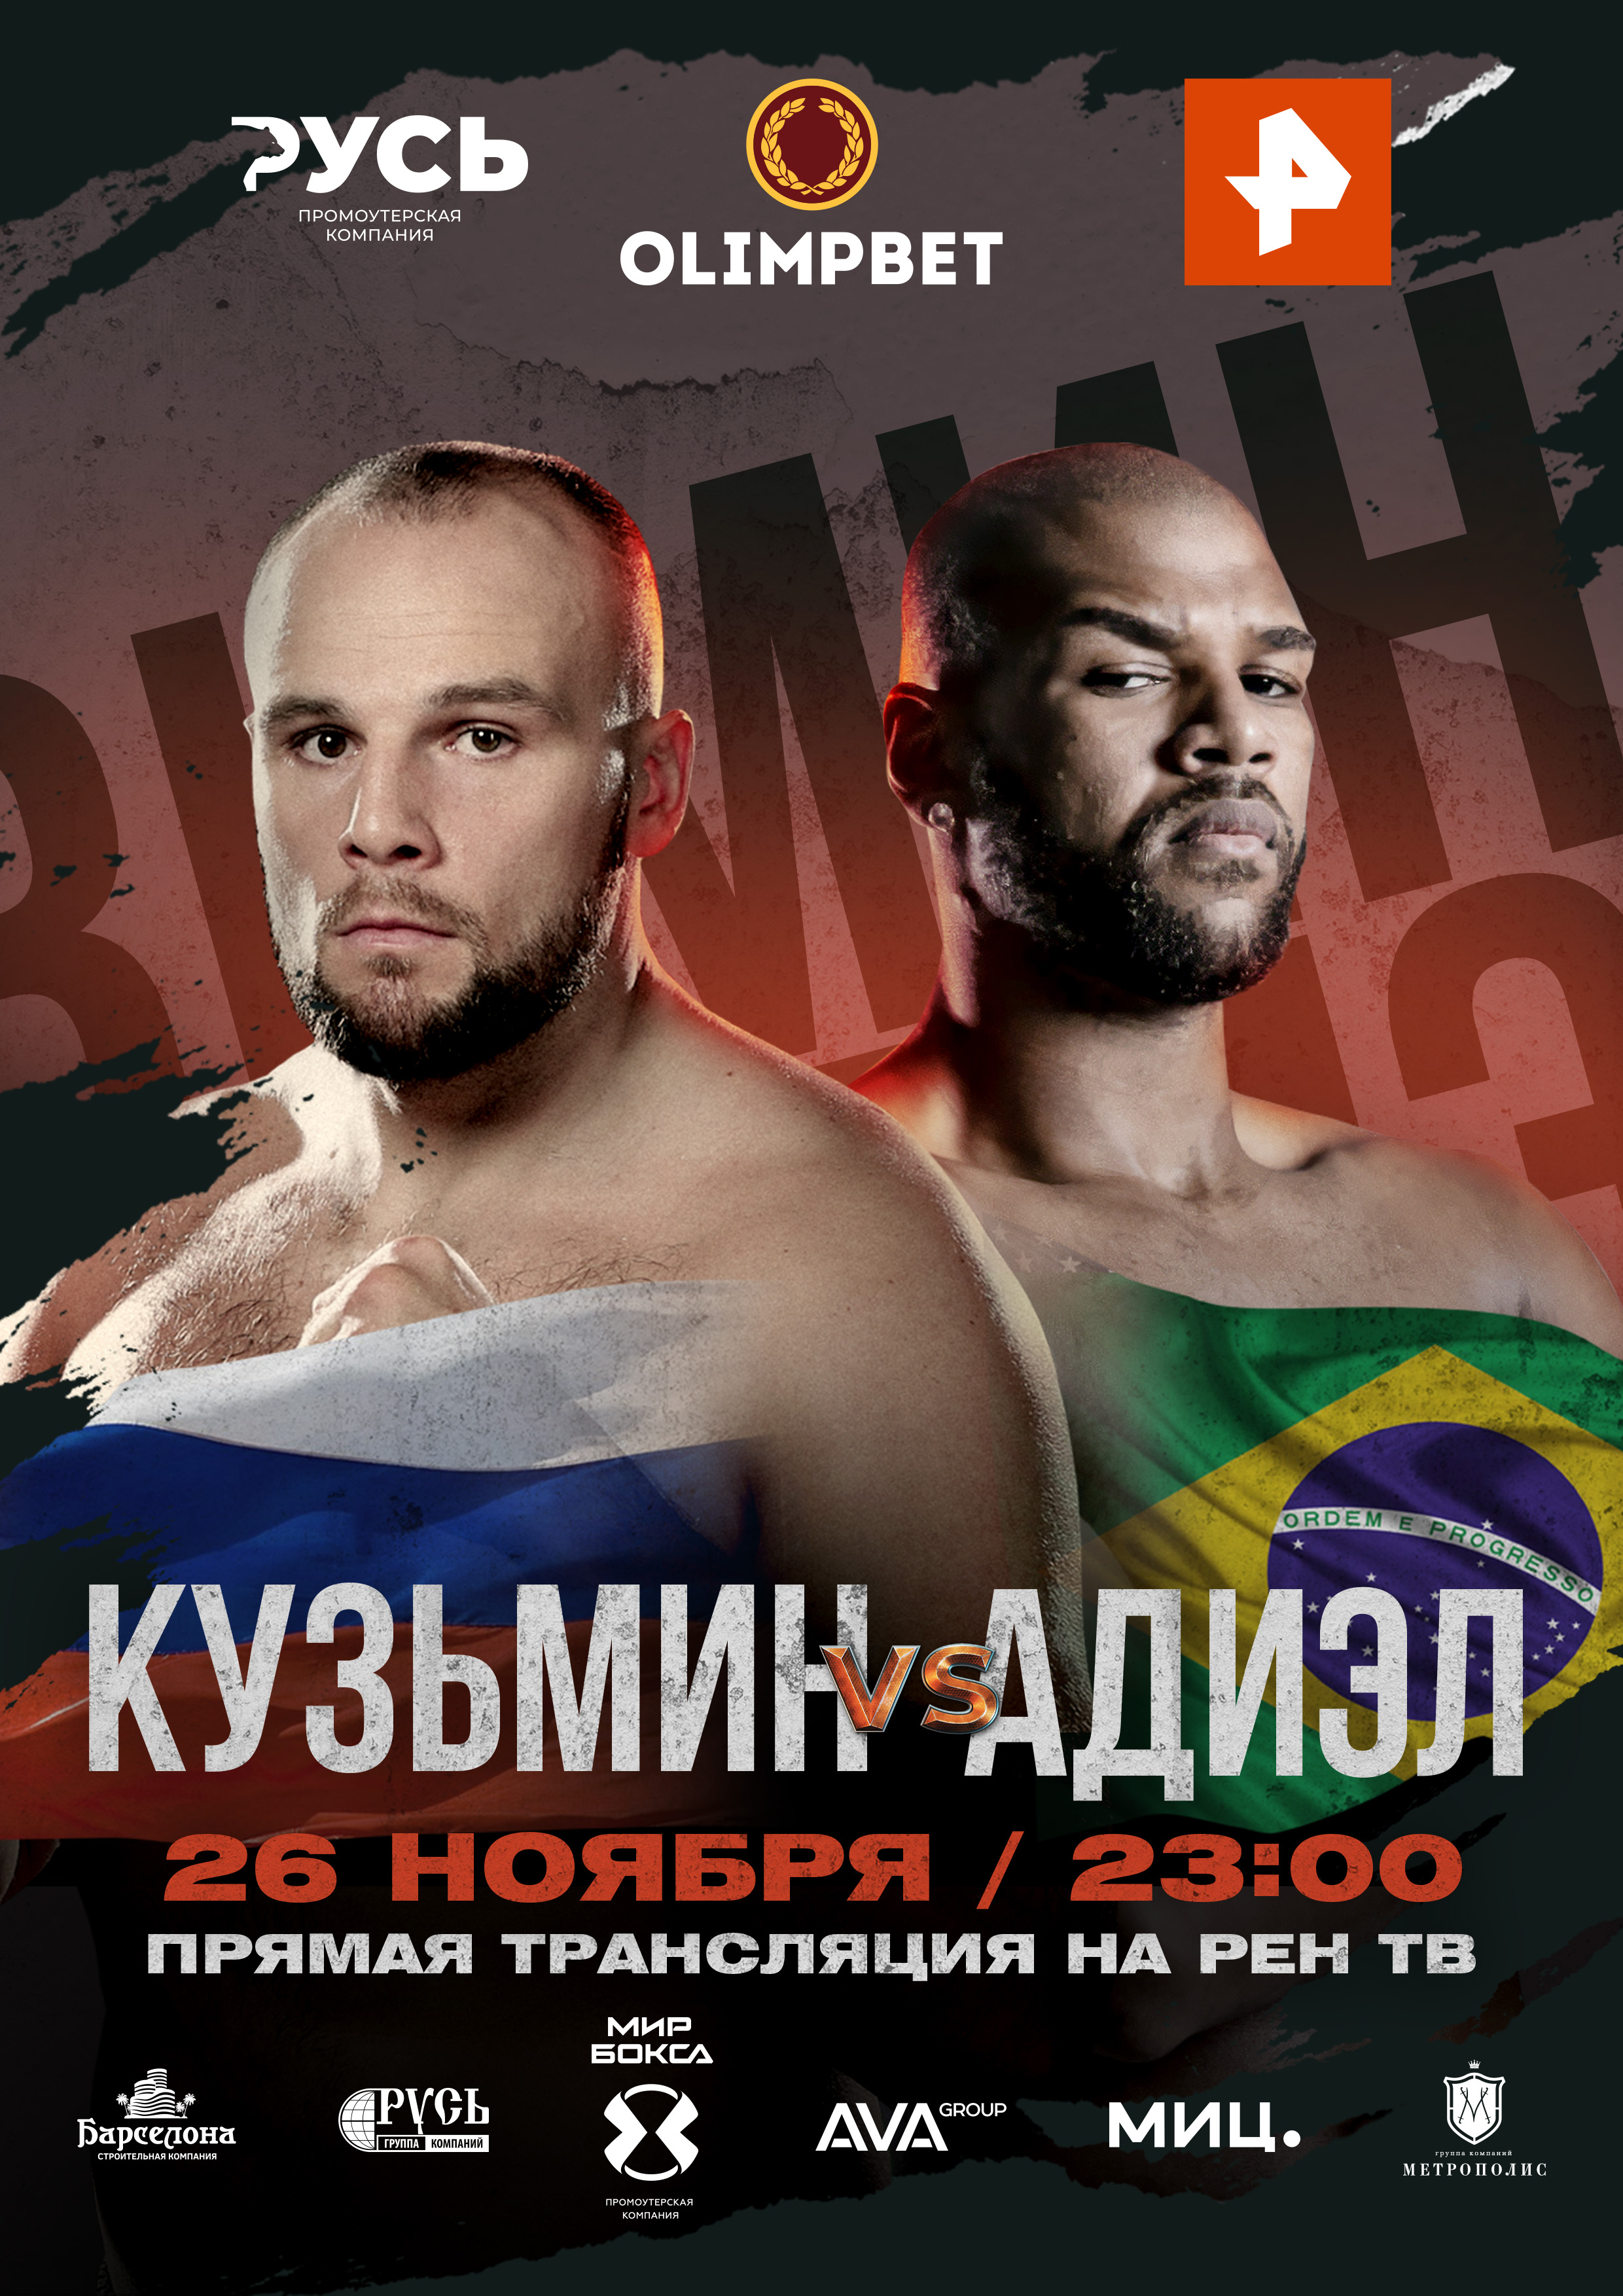 Сергей Кузьмин выйдет на ринг 26 ноября на РЕН ТВ